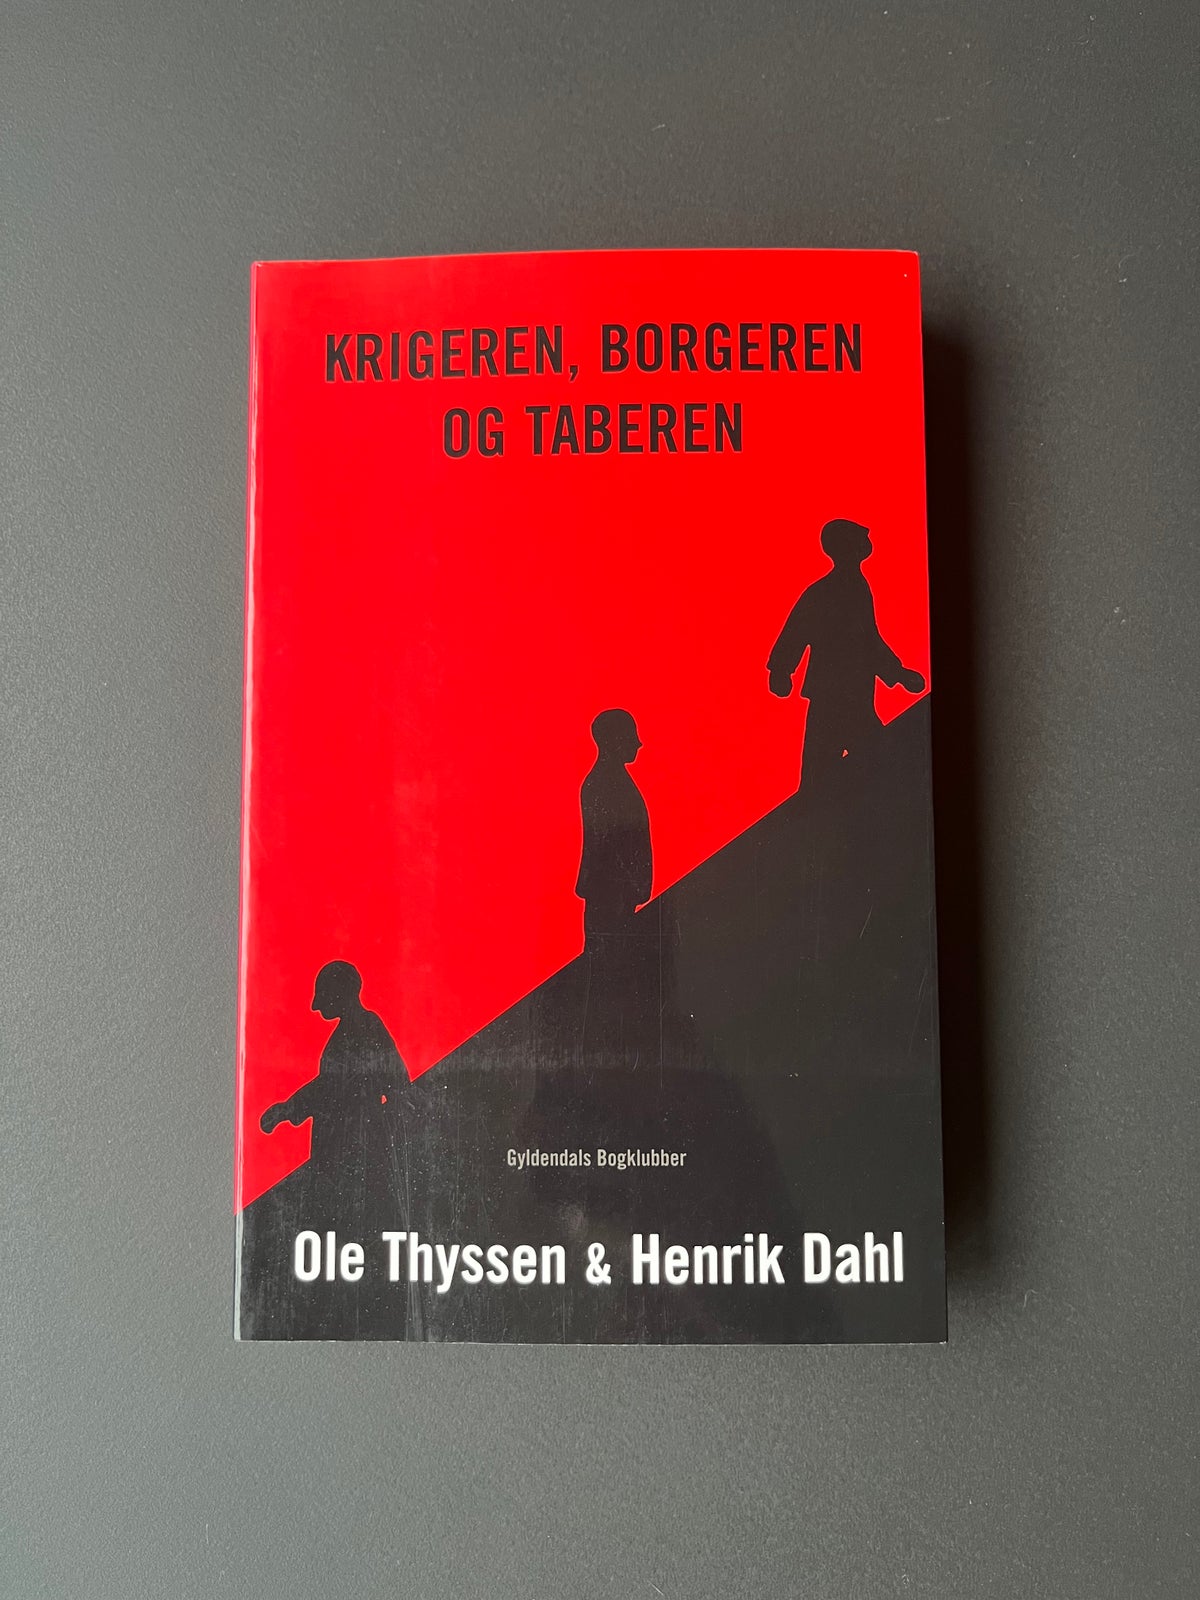 Krigeren, Borgeren og Taberen, Ole Thyssen & Henrik Dahl